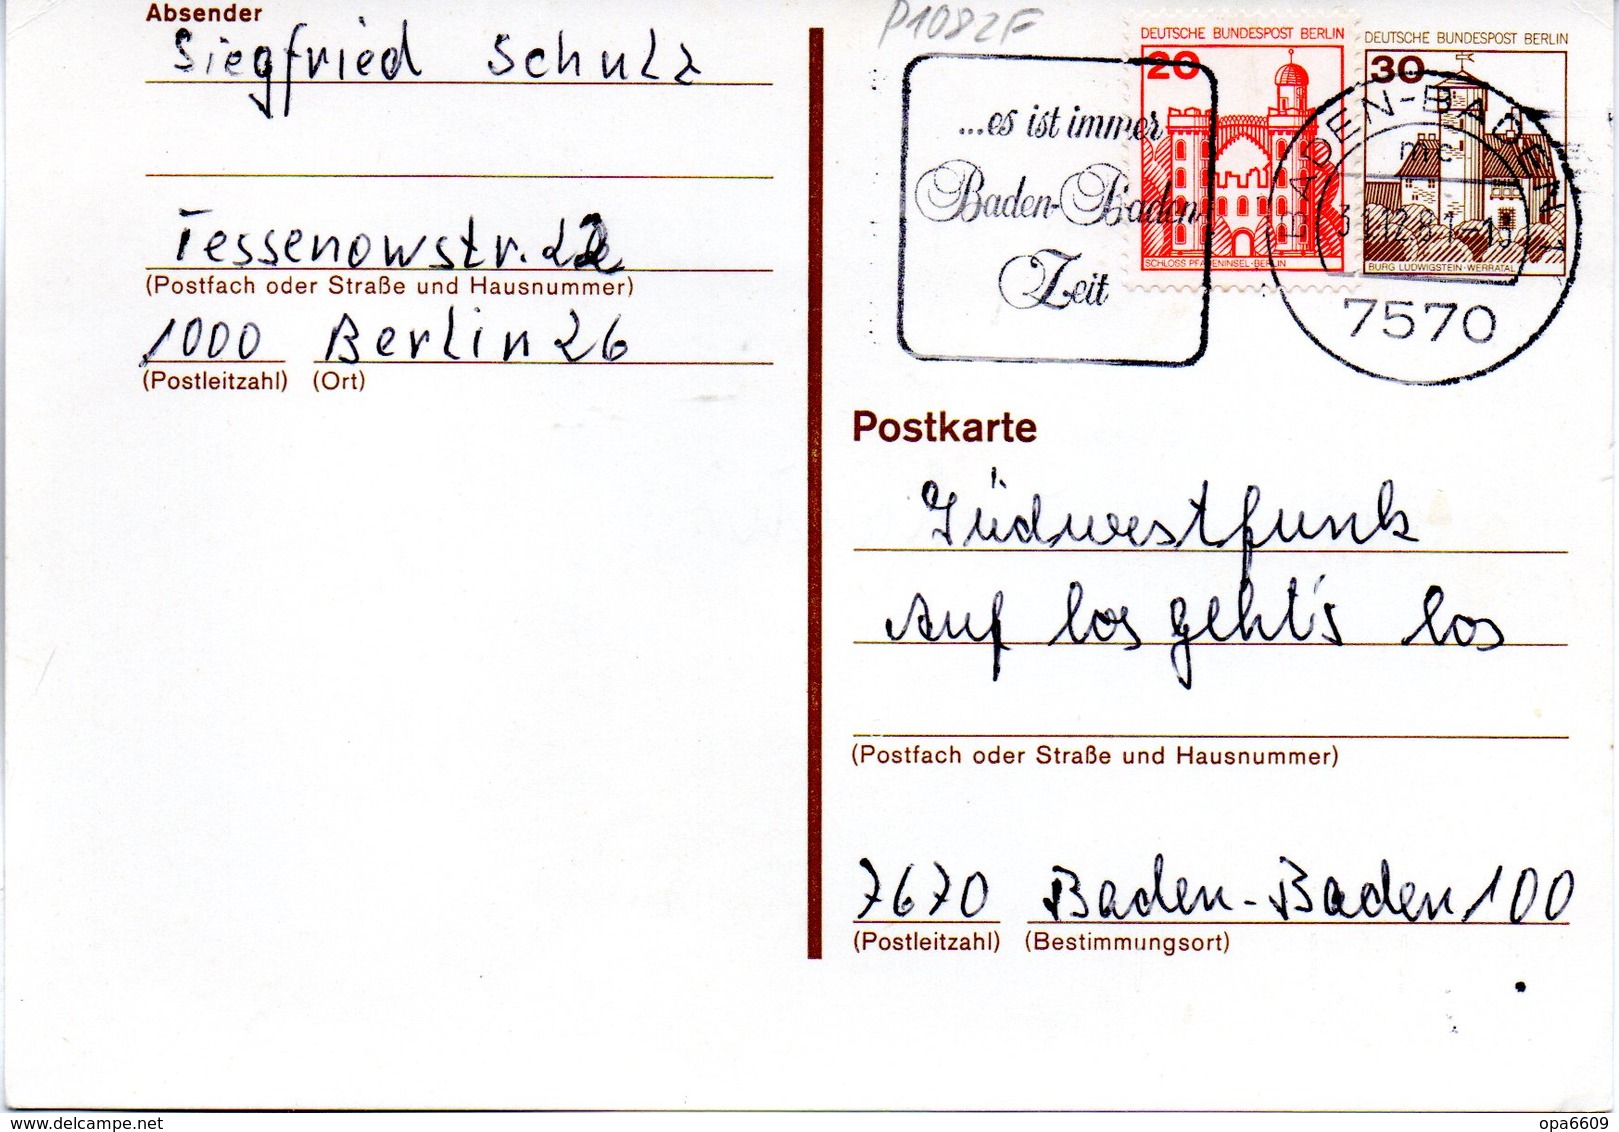 WB Amtliche Ganzsachen-Postkarte P108 ZF Wst."Burgen Und Schlösser"30(Pf) Gelboliv, MWSt 31.12.81 BADEN-BADEN - Postkaarten - Gebruikt